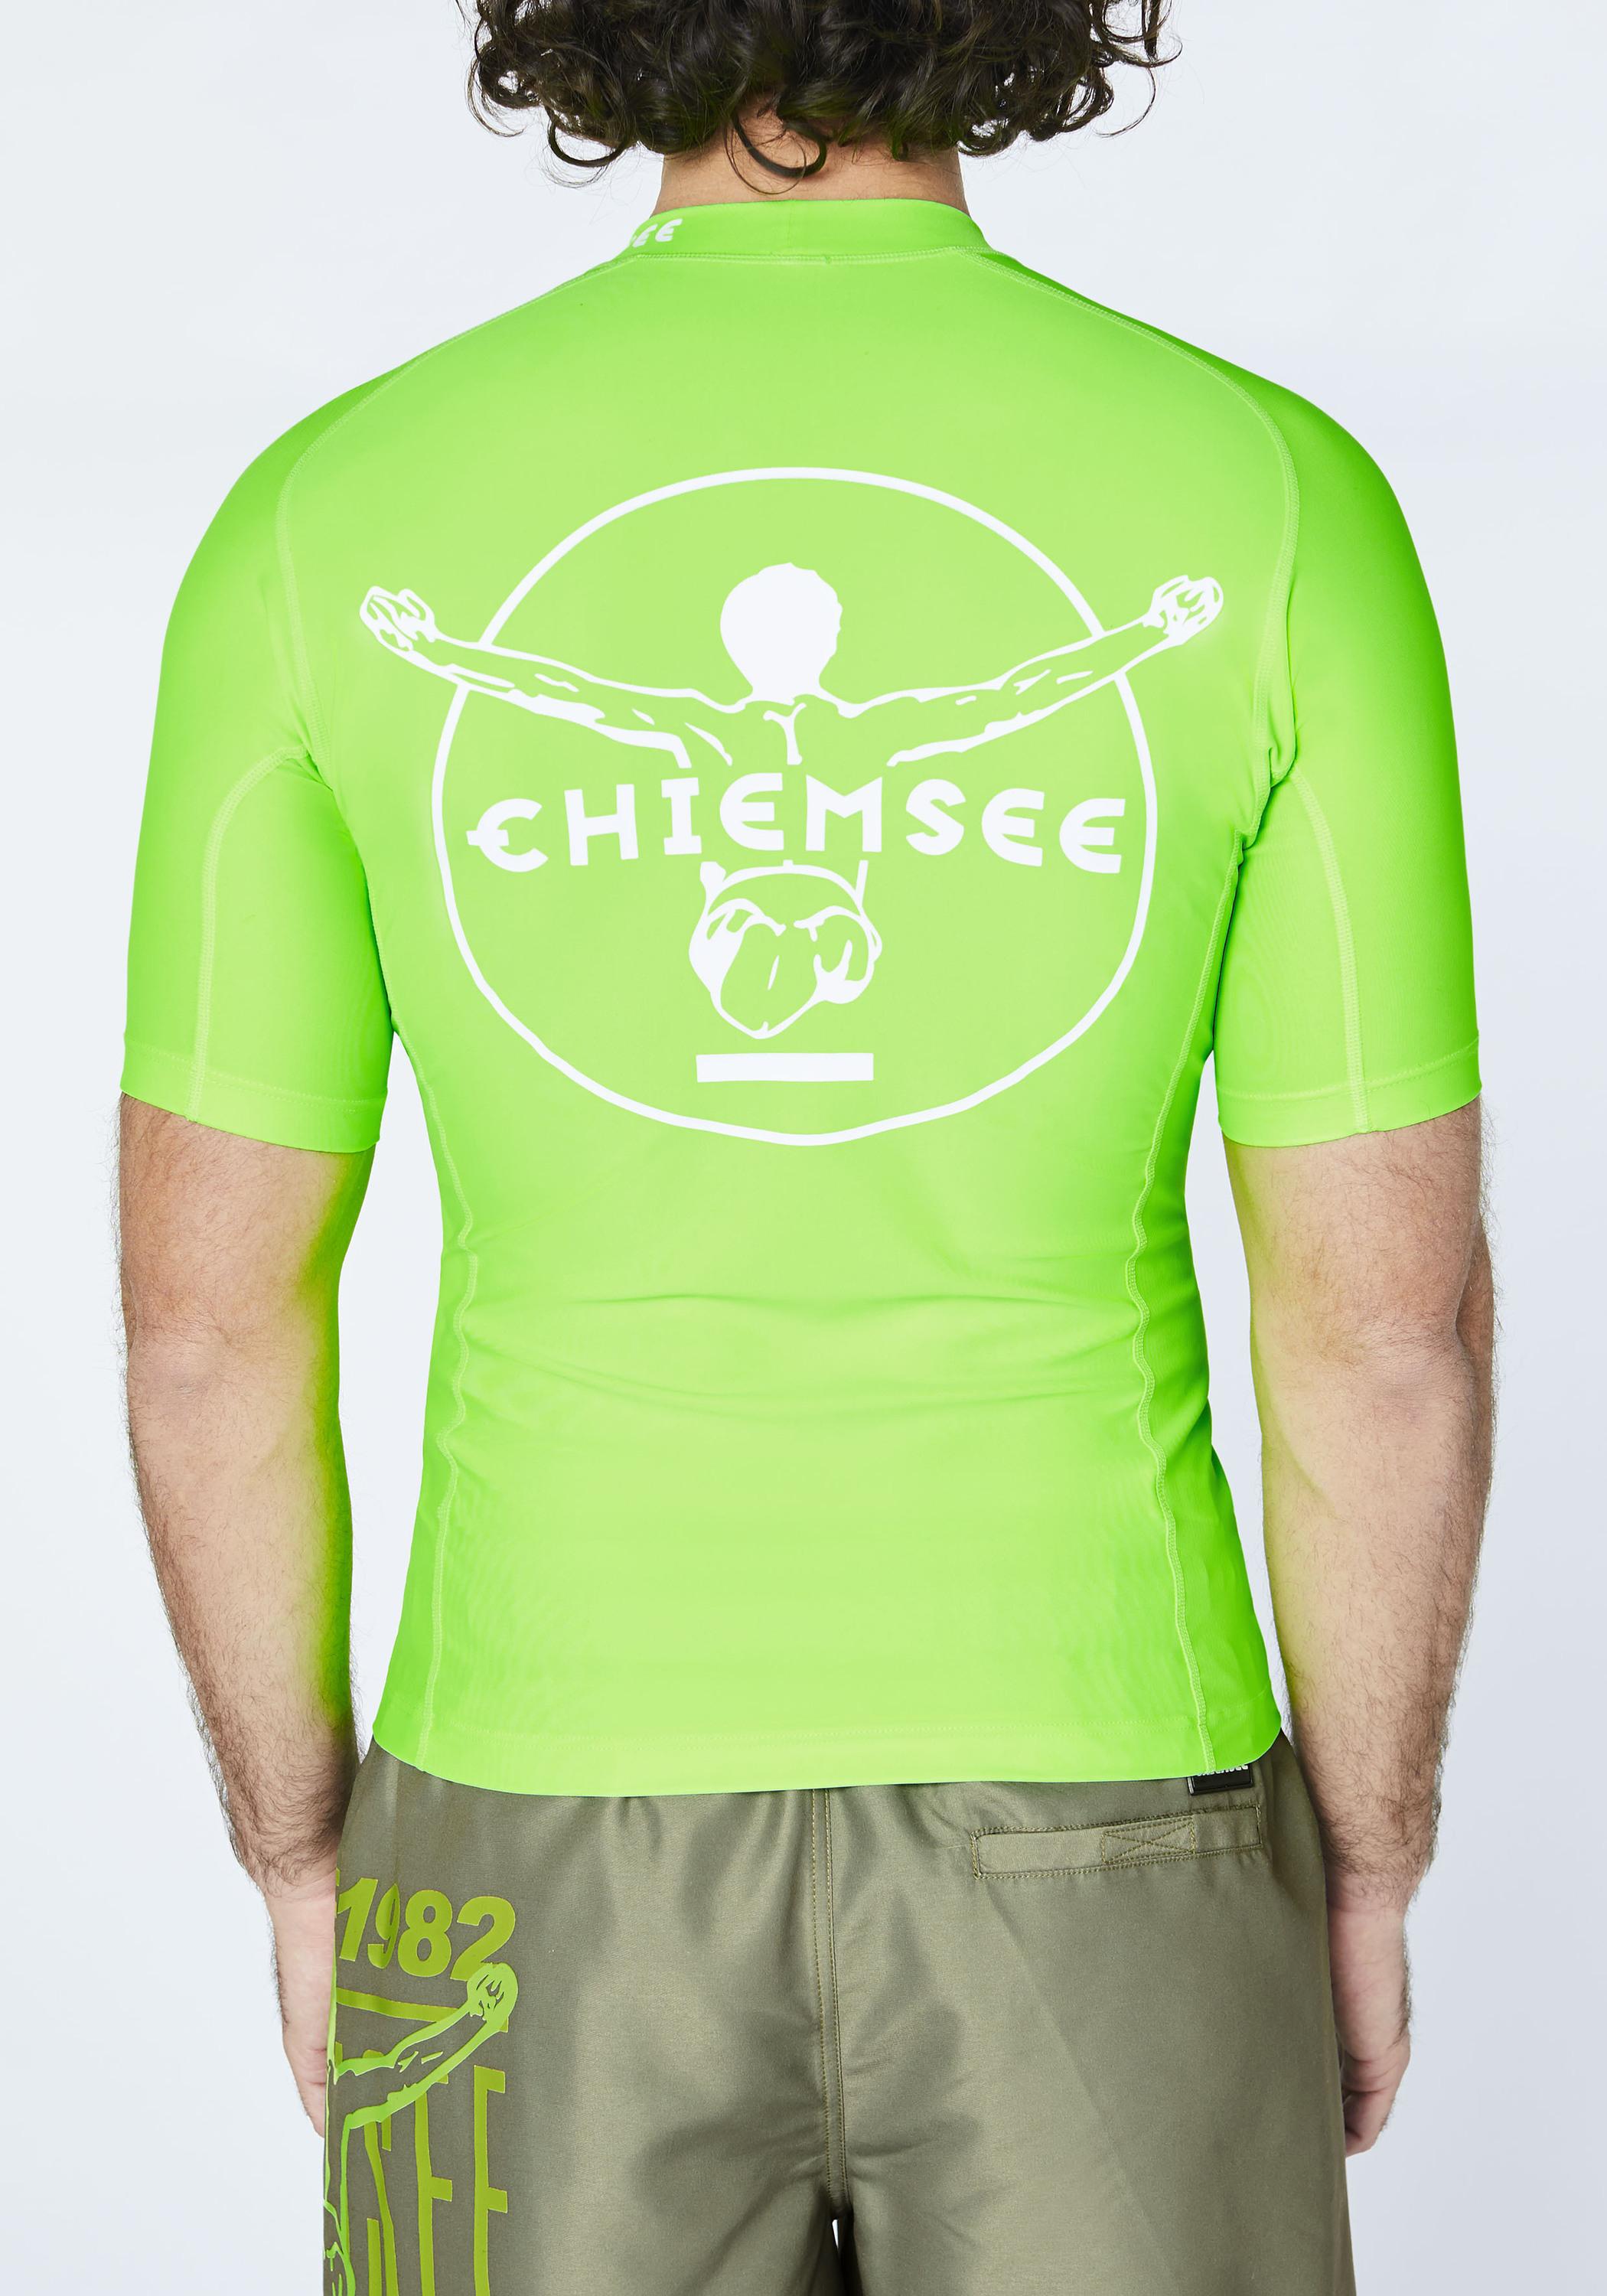 Chiemsee Badeshirt Surf Shirt kaufen von im Gecko Online Shop Green SportScheck